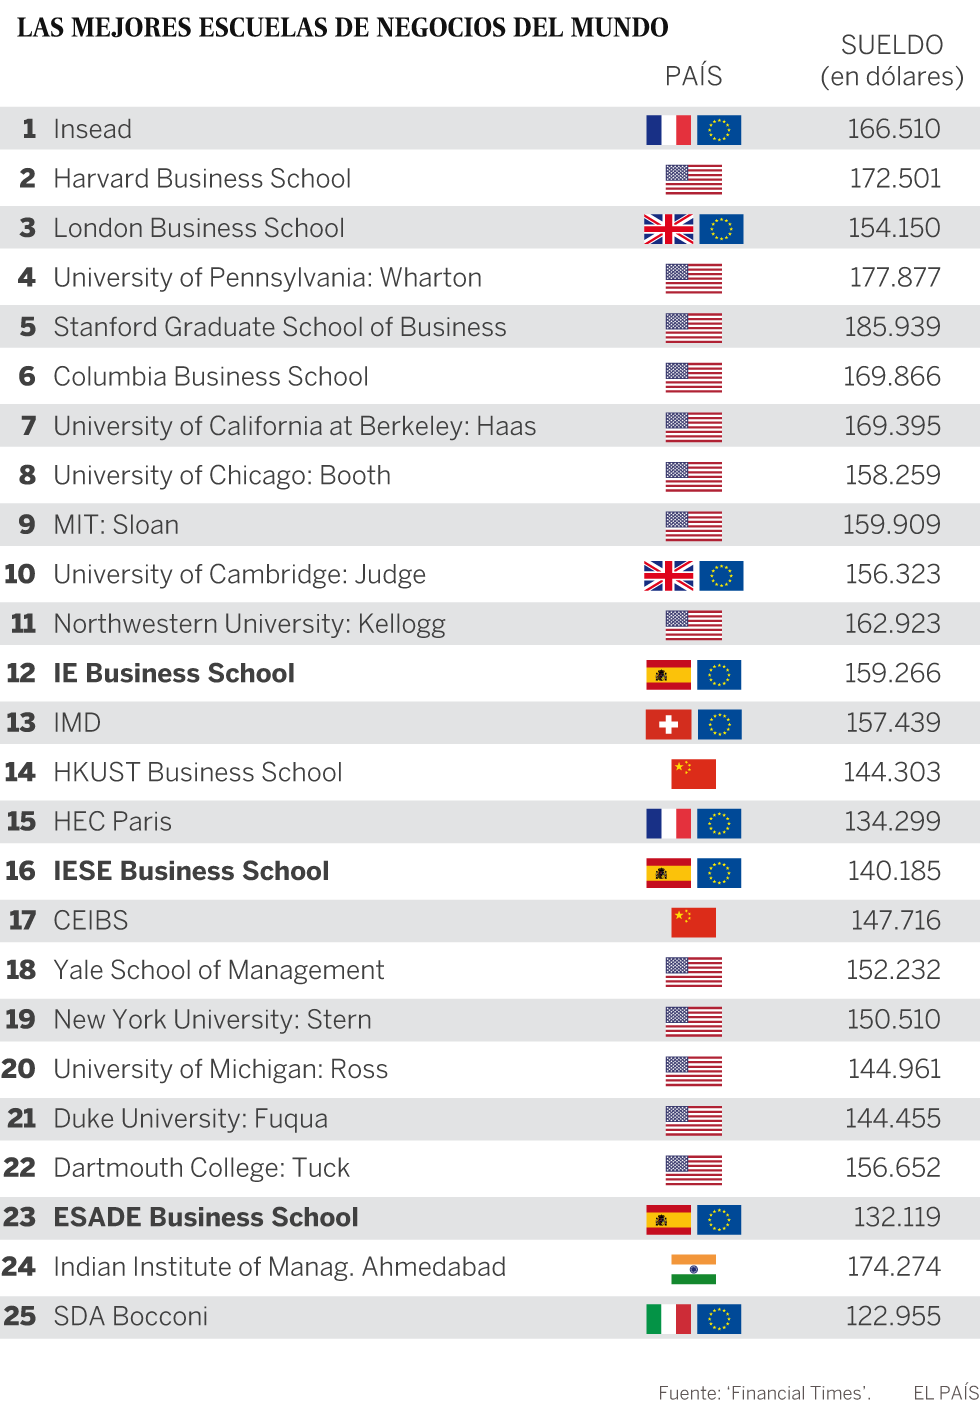 Harvard ya no tiene la mejor escuela de negocios del mundo